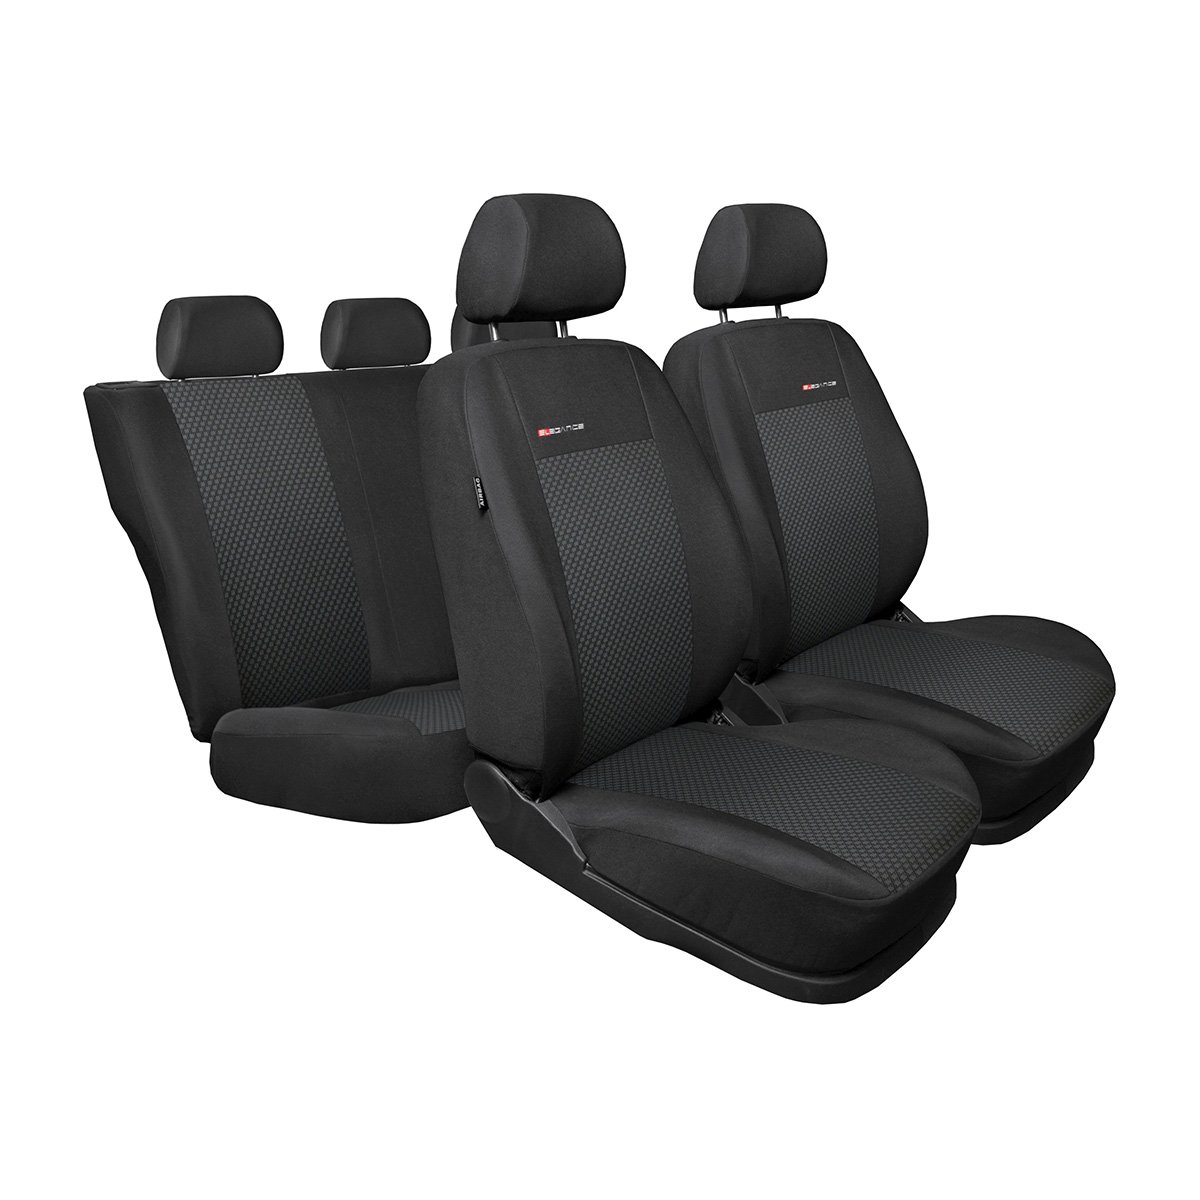 Mossa - Maßgeschneiderte Sitzbezüge Auto kompatibel mit Peugeot 3008 SUV (2009-2016) - Autositzbezüge Schonbezüge für Autositze - E3 von Mossa